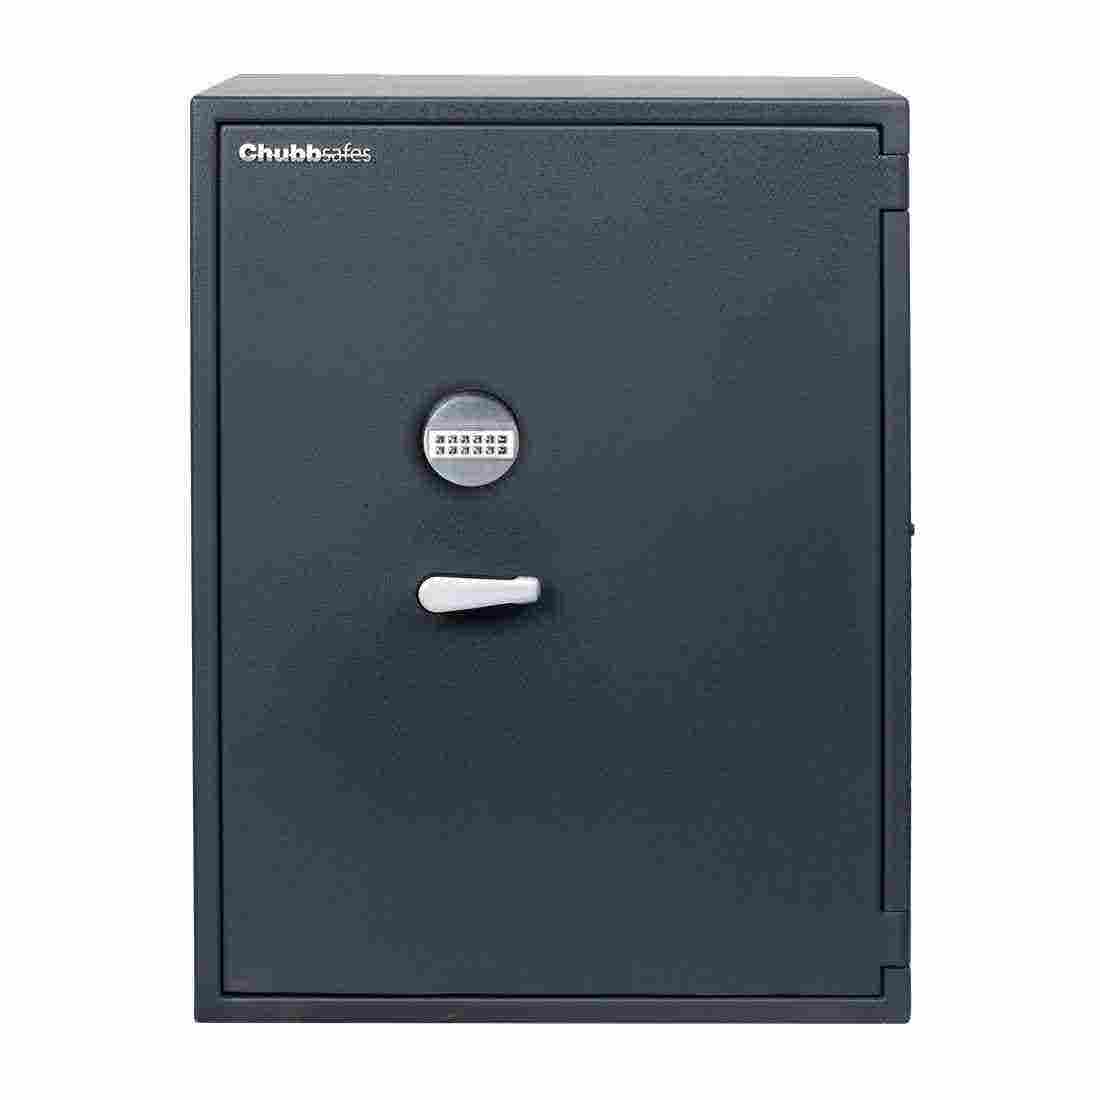 อุปกรณ์รักษาความปลอดภัยภายในบ้าน ตู้เซฟ สีสีดำ-SB Design Square